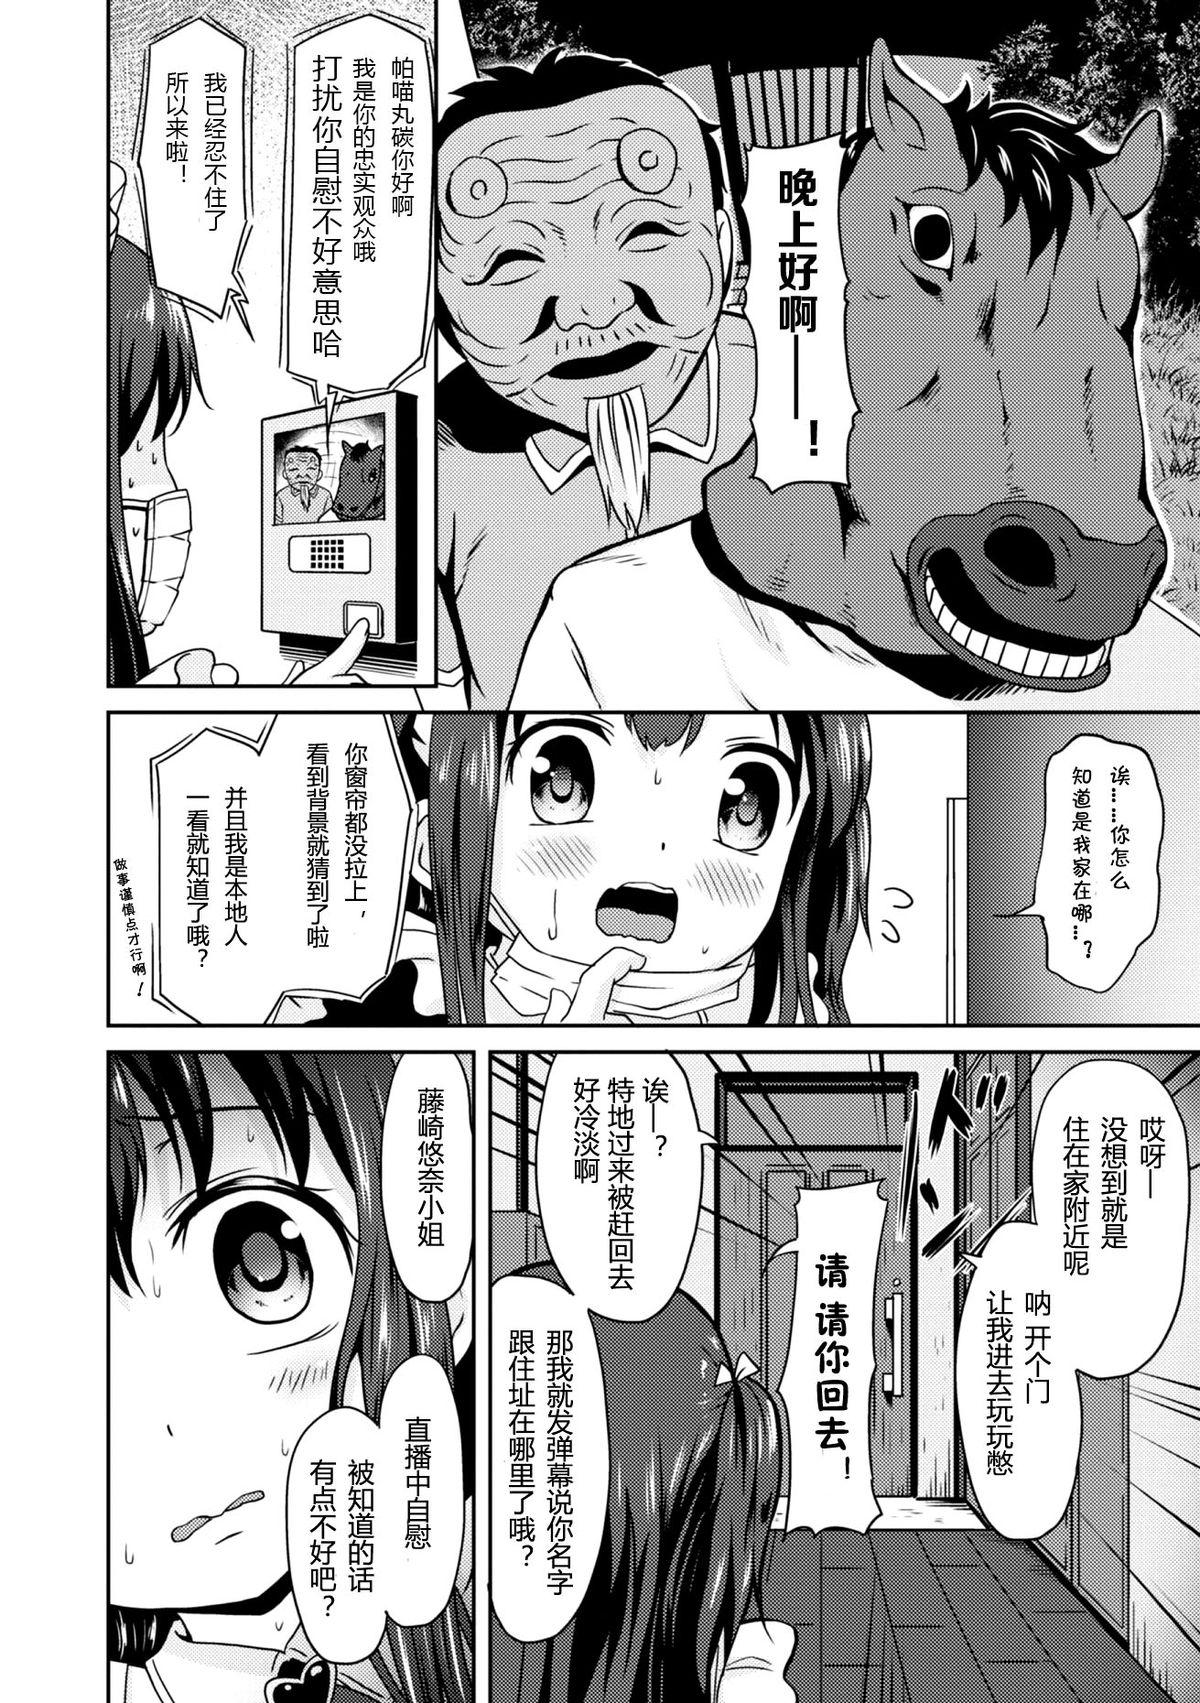 Belly "Jigoku no" Panyumaru Seihaishin - Maboroshi no Guest Kai "ReaTotsu" Erotica - Page 6